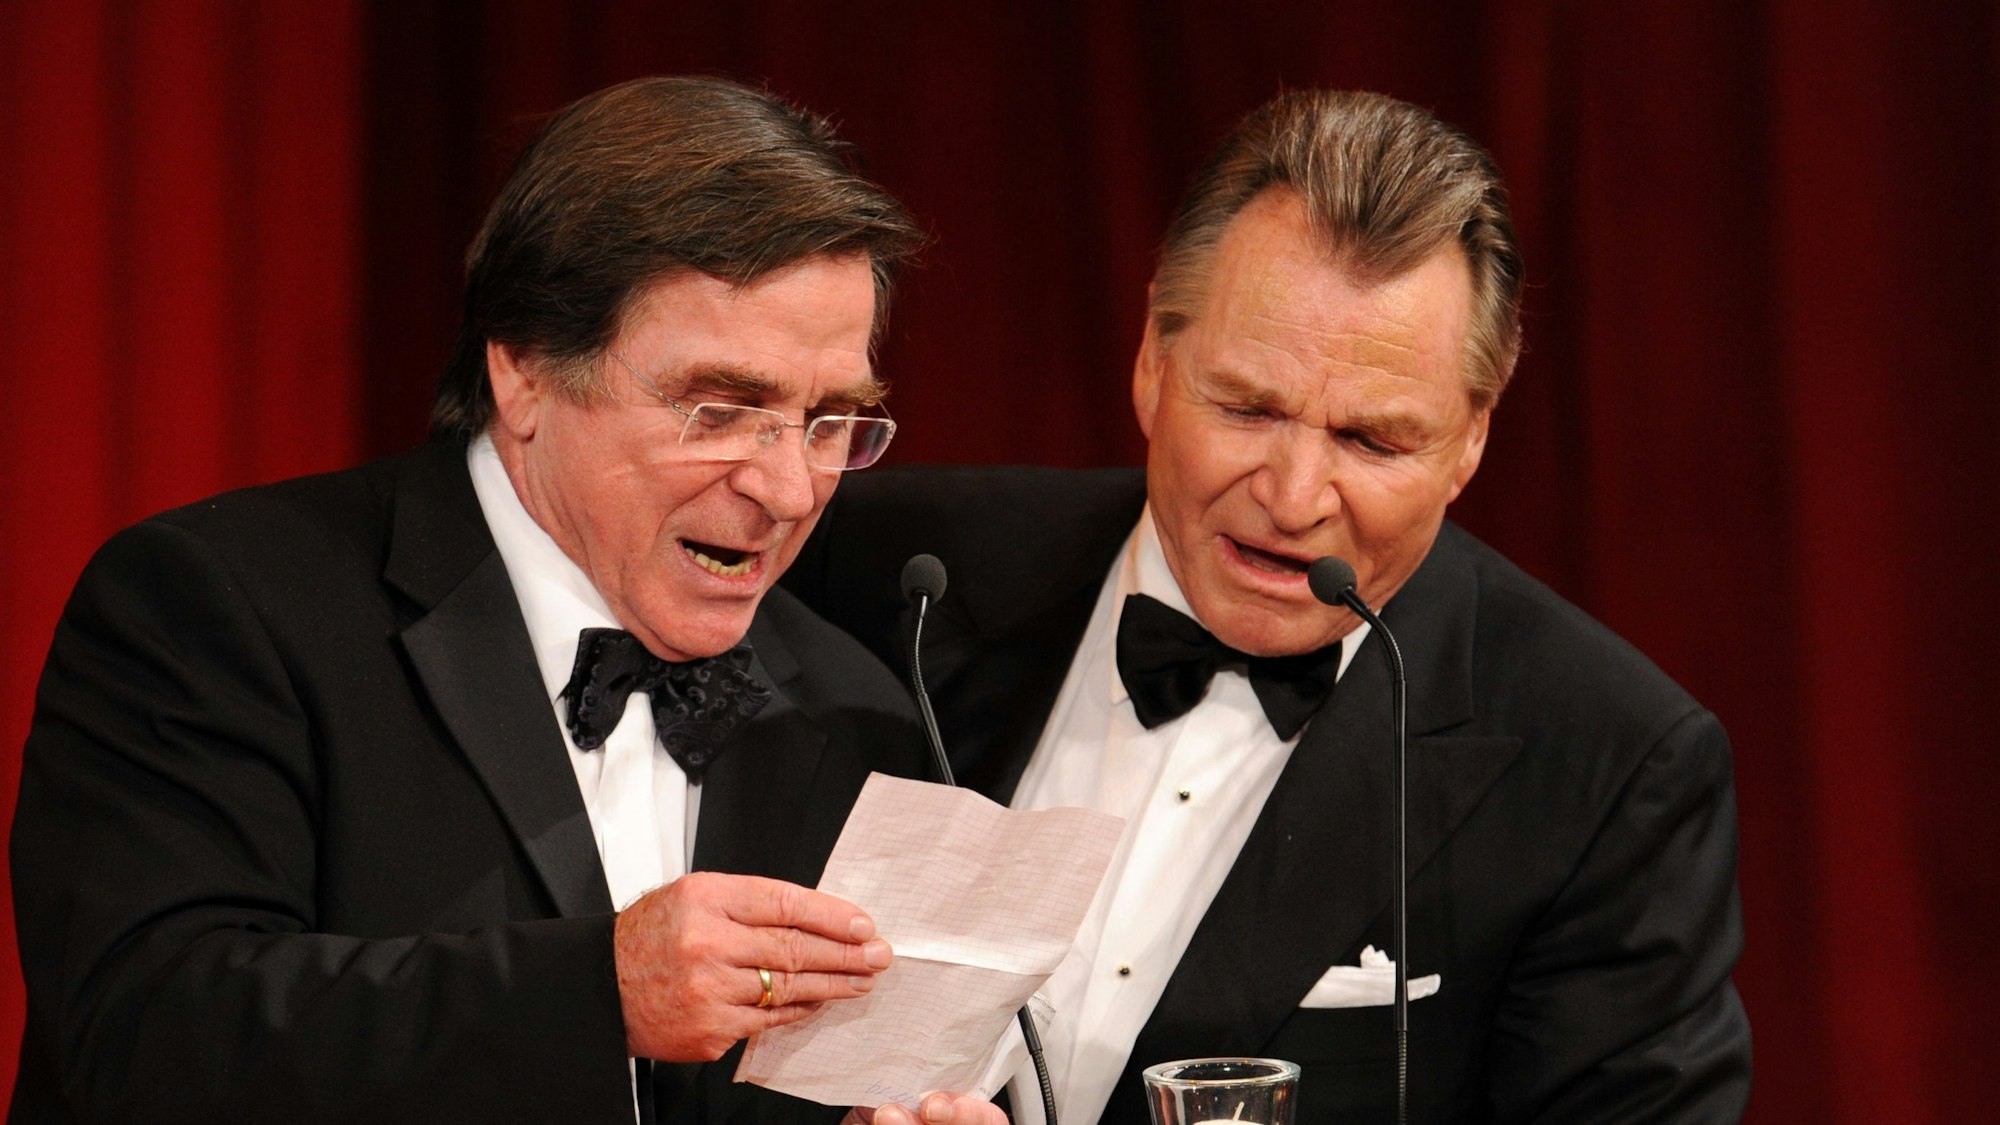 Die Schauspieler-Brüder Elmar (l) und Fritz Wepper bedanken sich bei der Verleihung des Deutschen Entertainment-Preises DIVA 2009. (Archivfoto)